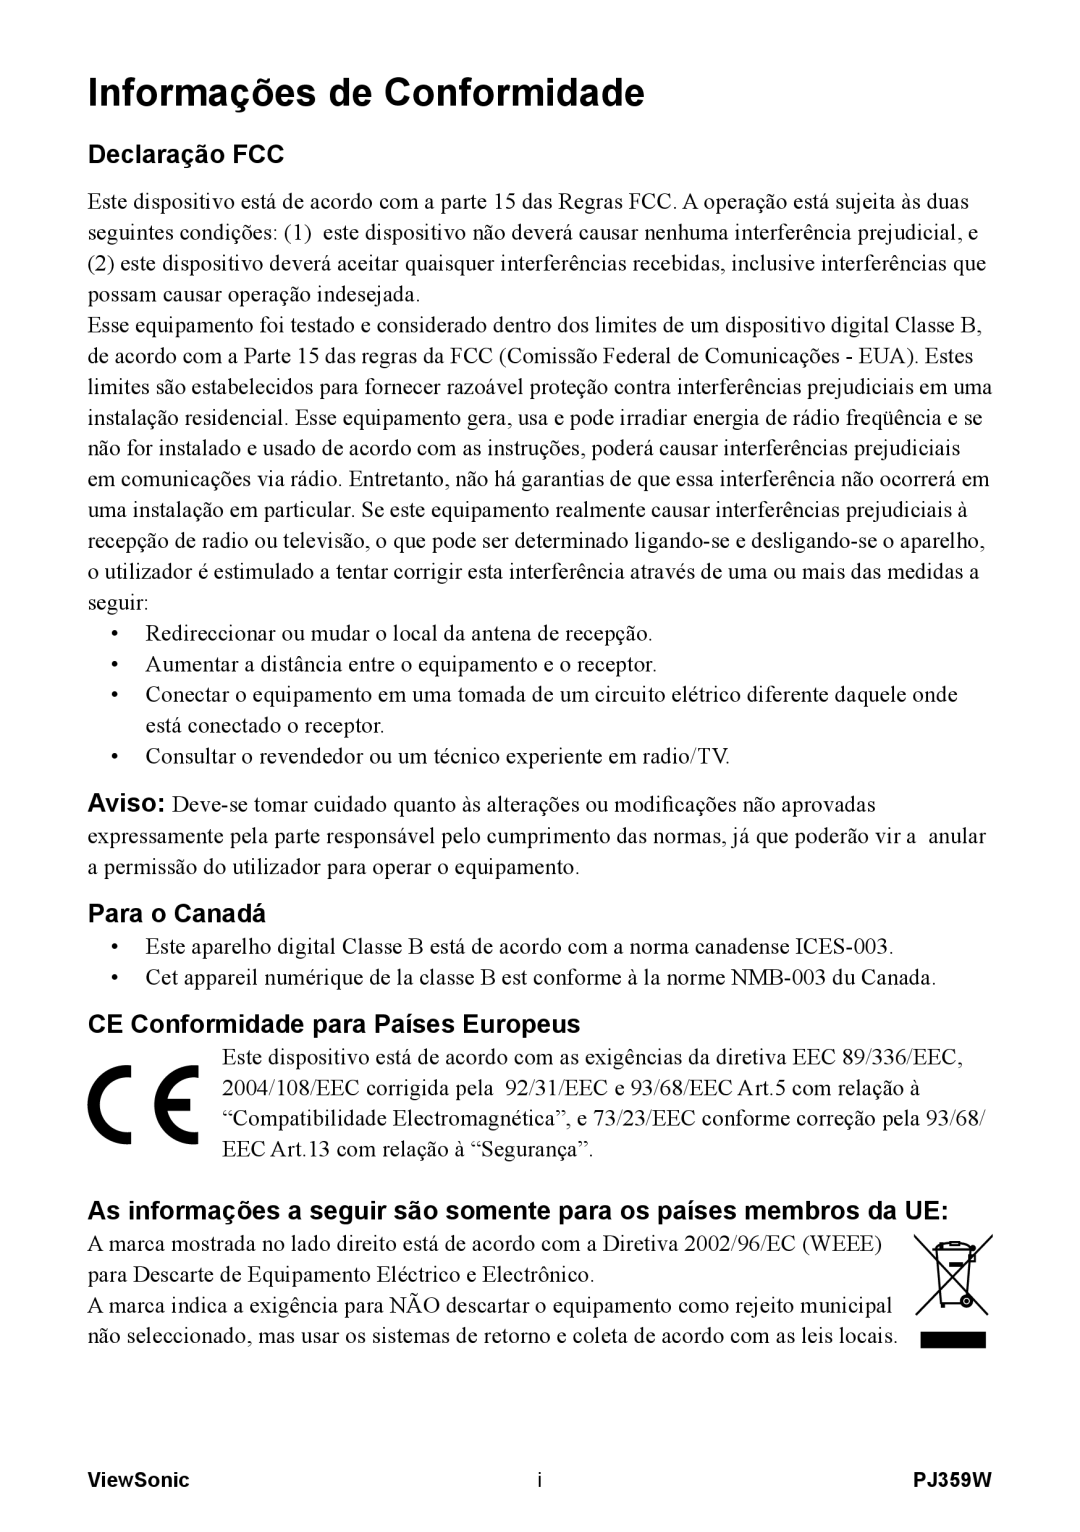 ViewSonic PJ359 manual Informações de Conformidade, Declaração FCC, Para o Canadá, CE Conformidade para Países Europeus 